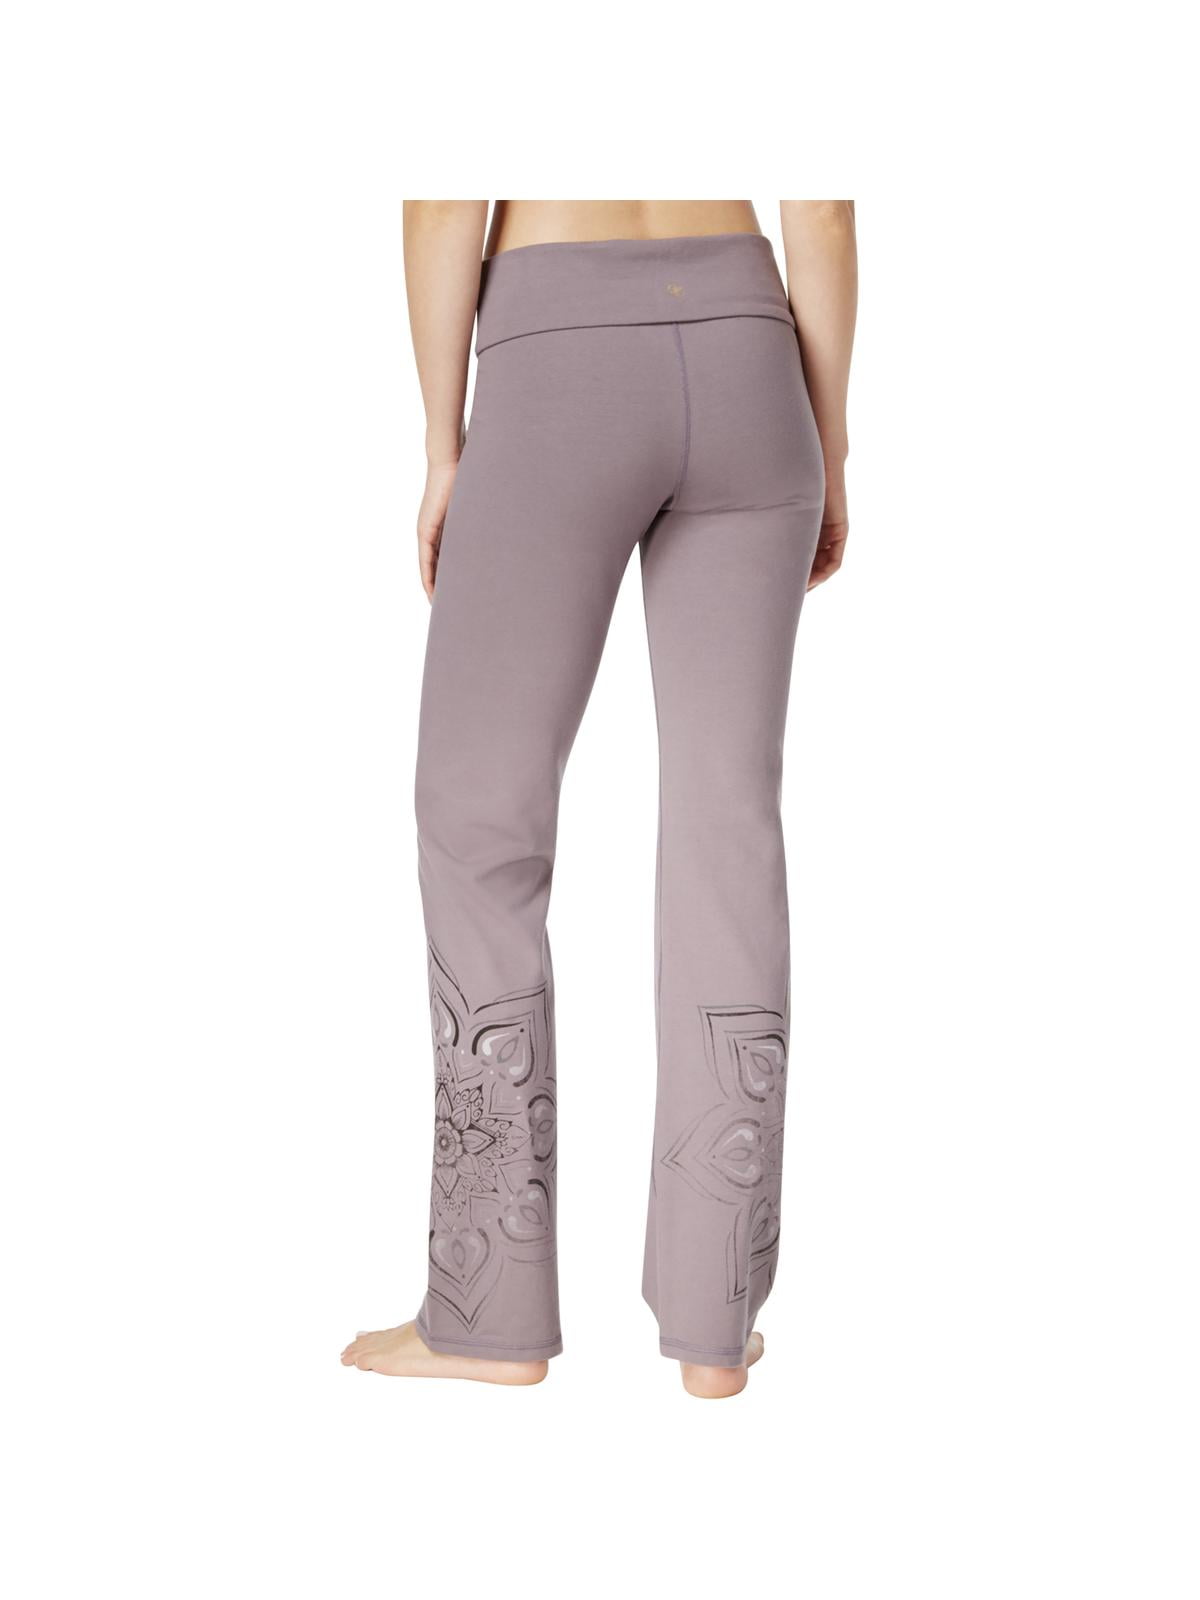 Women's Gaiam Zen Bootcut Yoga Pants  Activewear fashion, Yoga pants, Gaiam